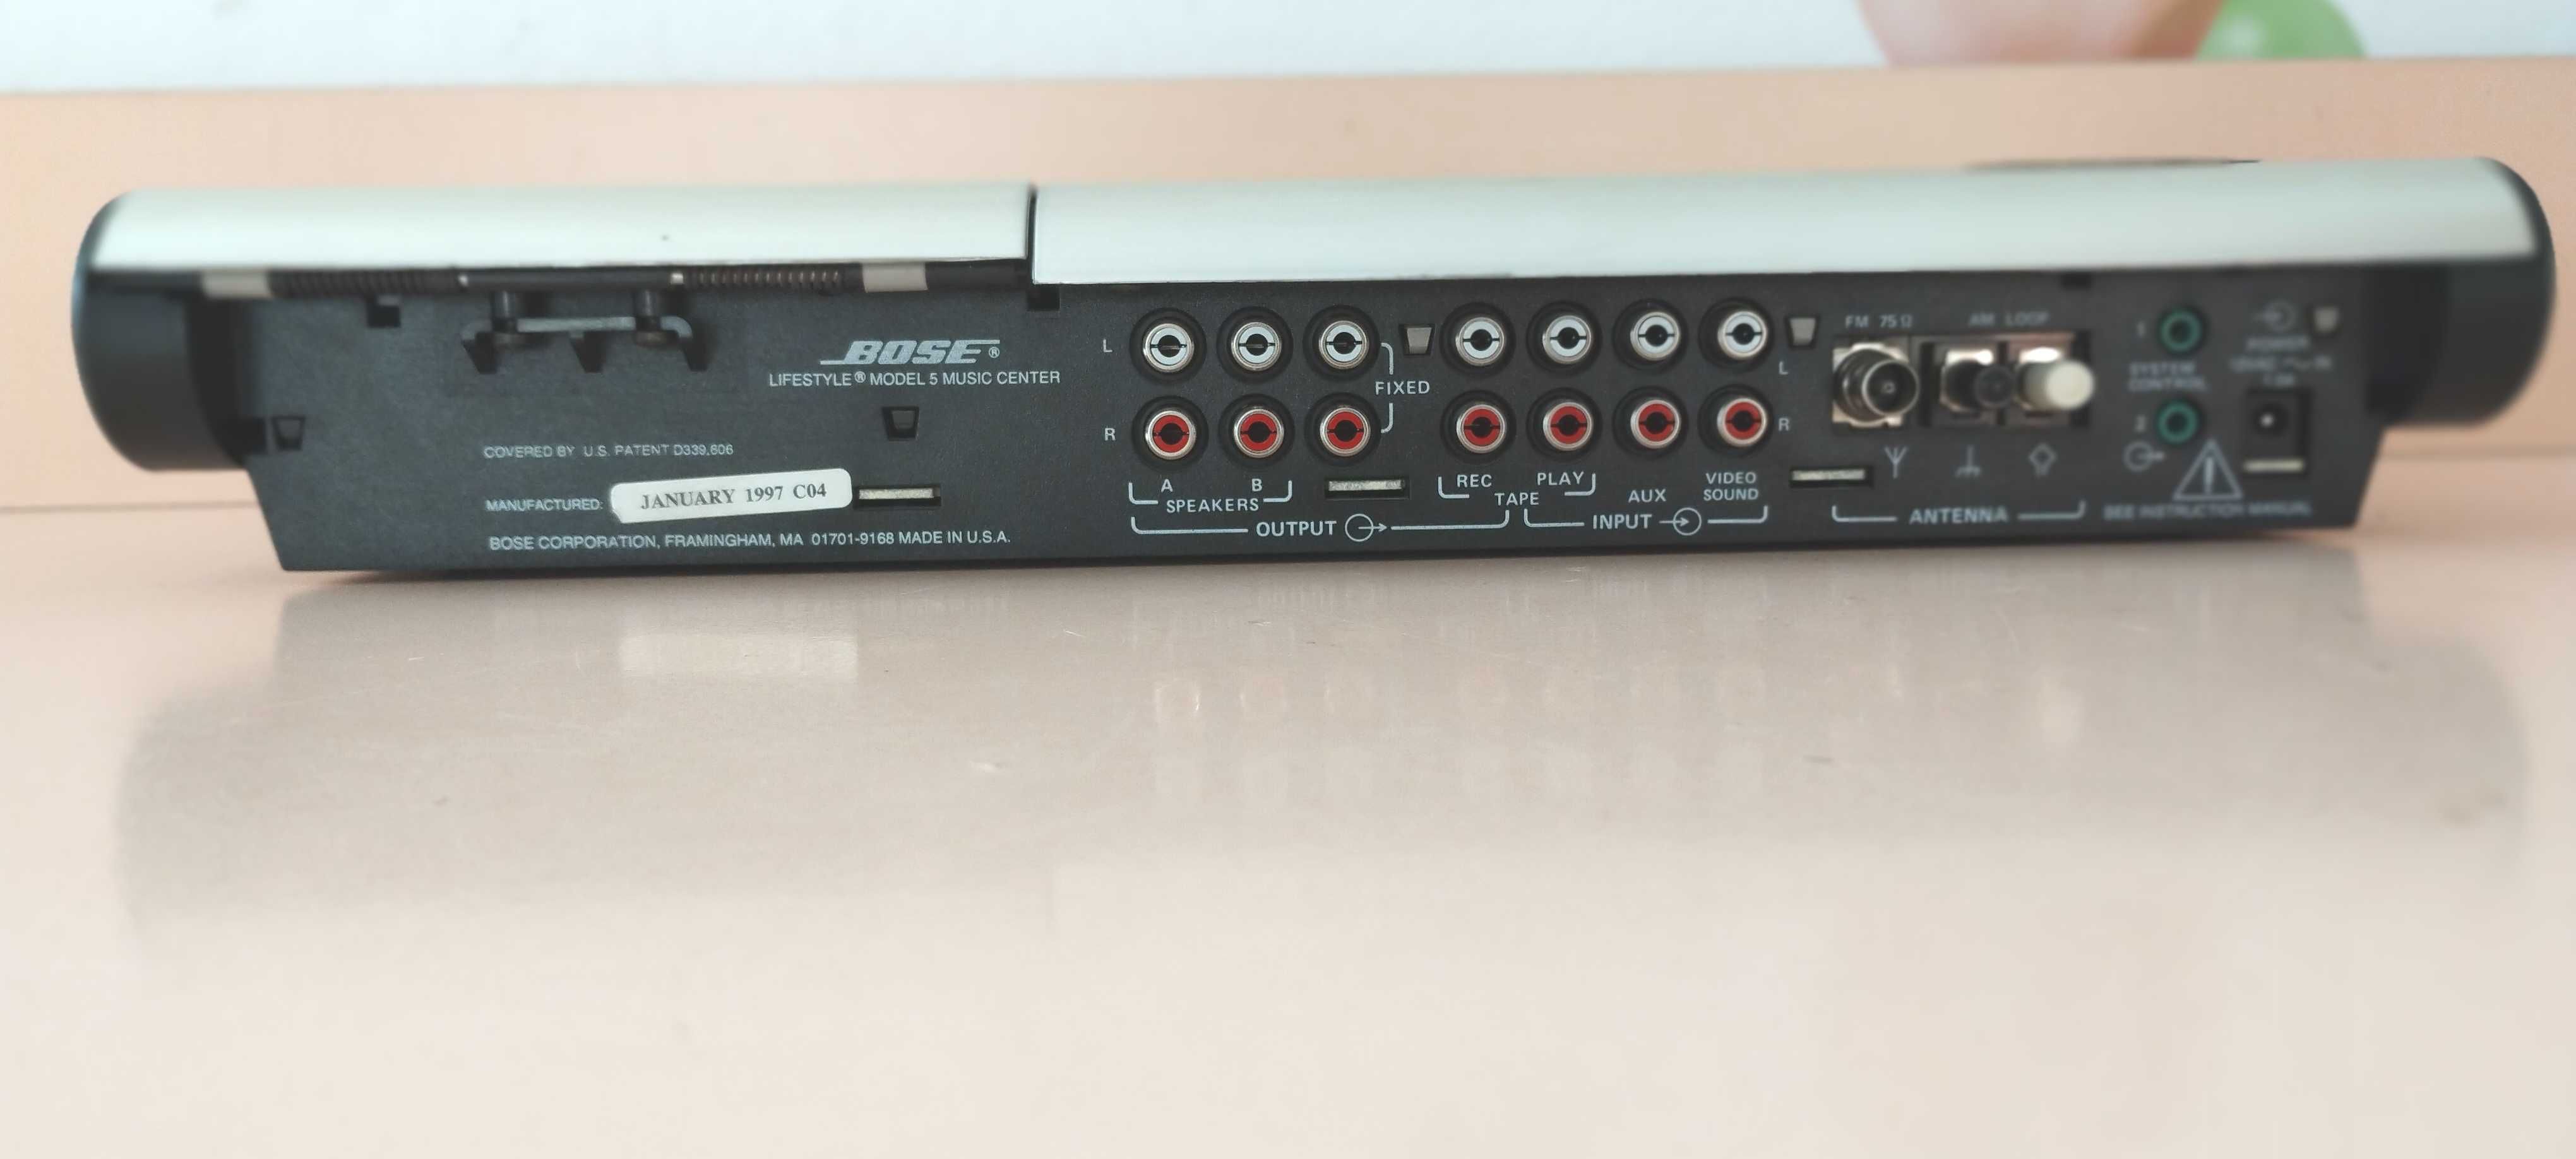 sistem muzica subwoofer Bose 2683-2  cu preamplificator Bose Lifestyle